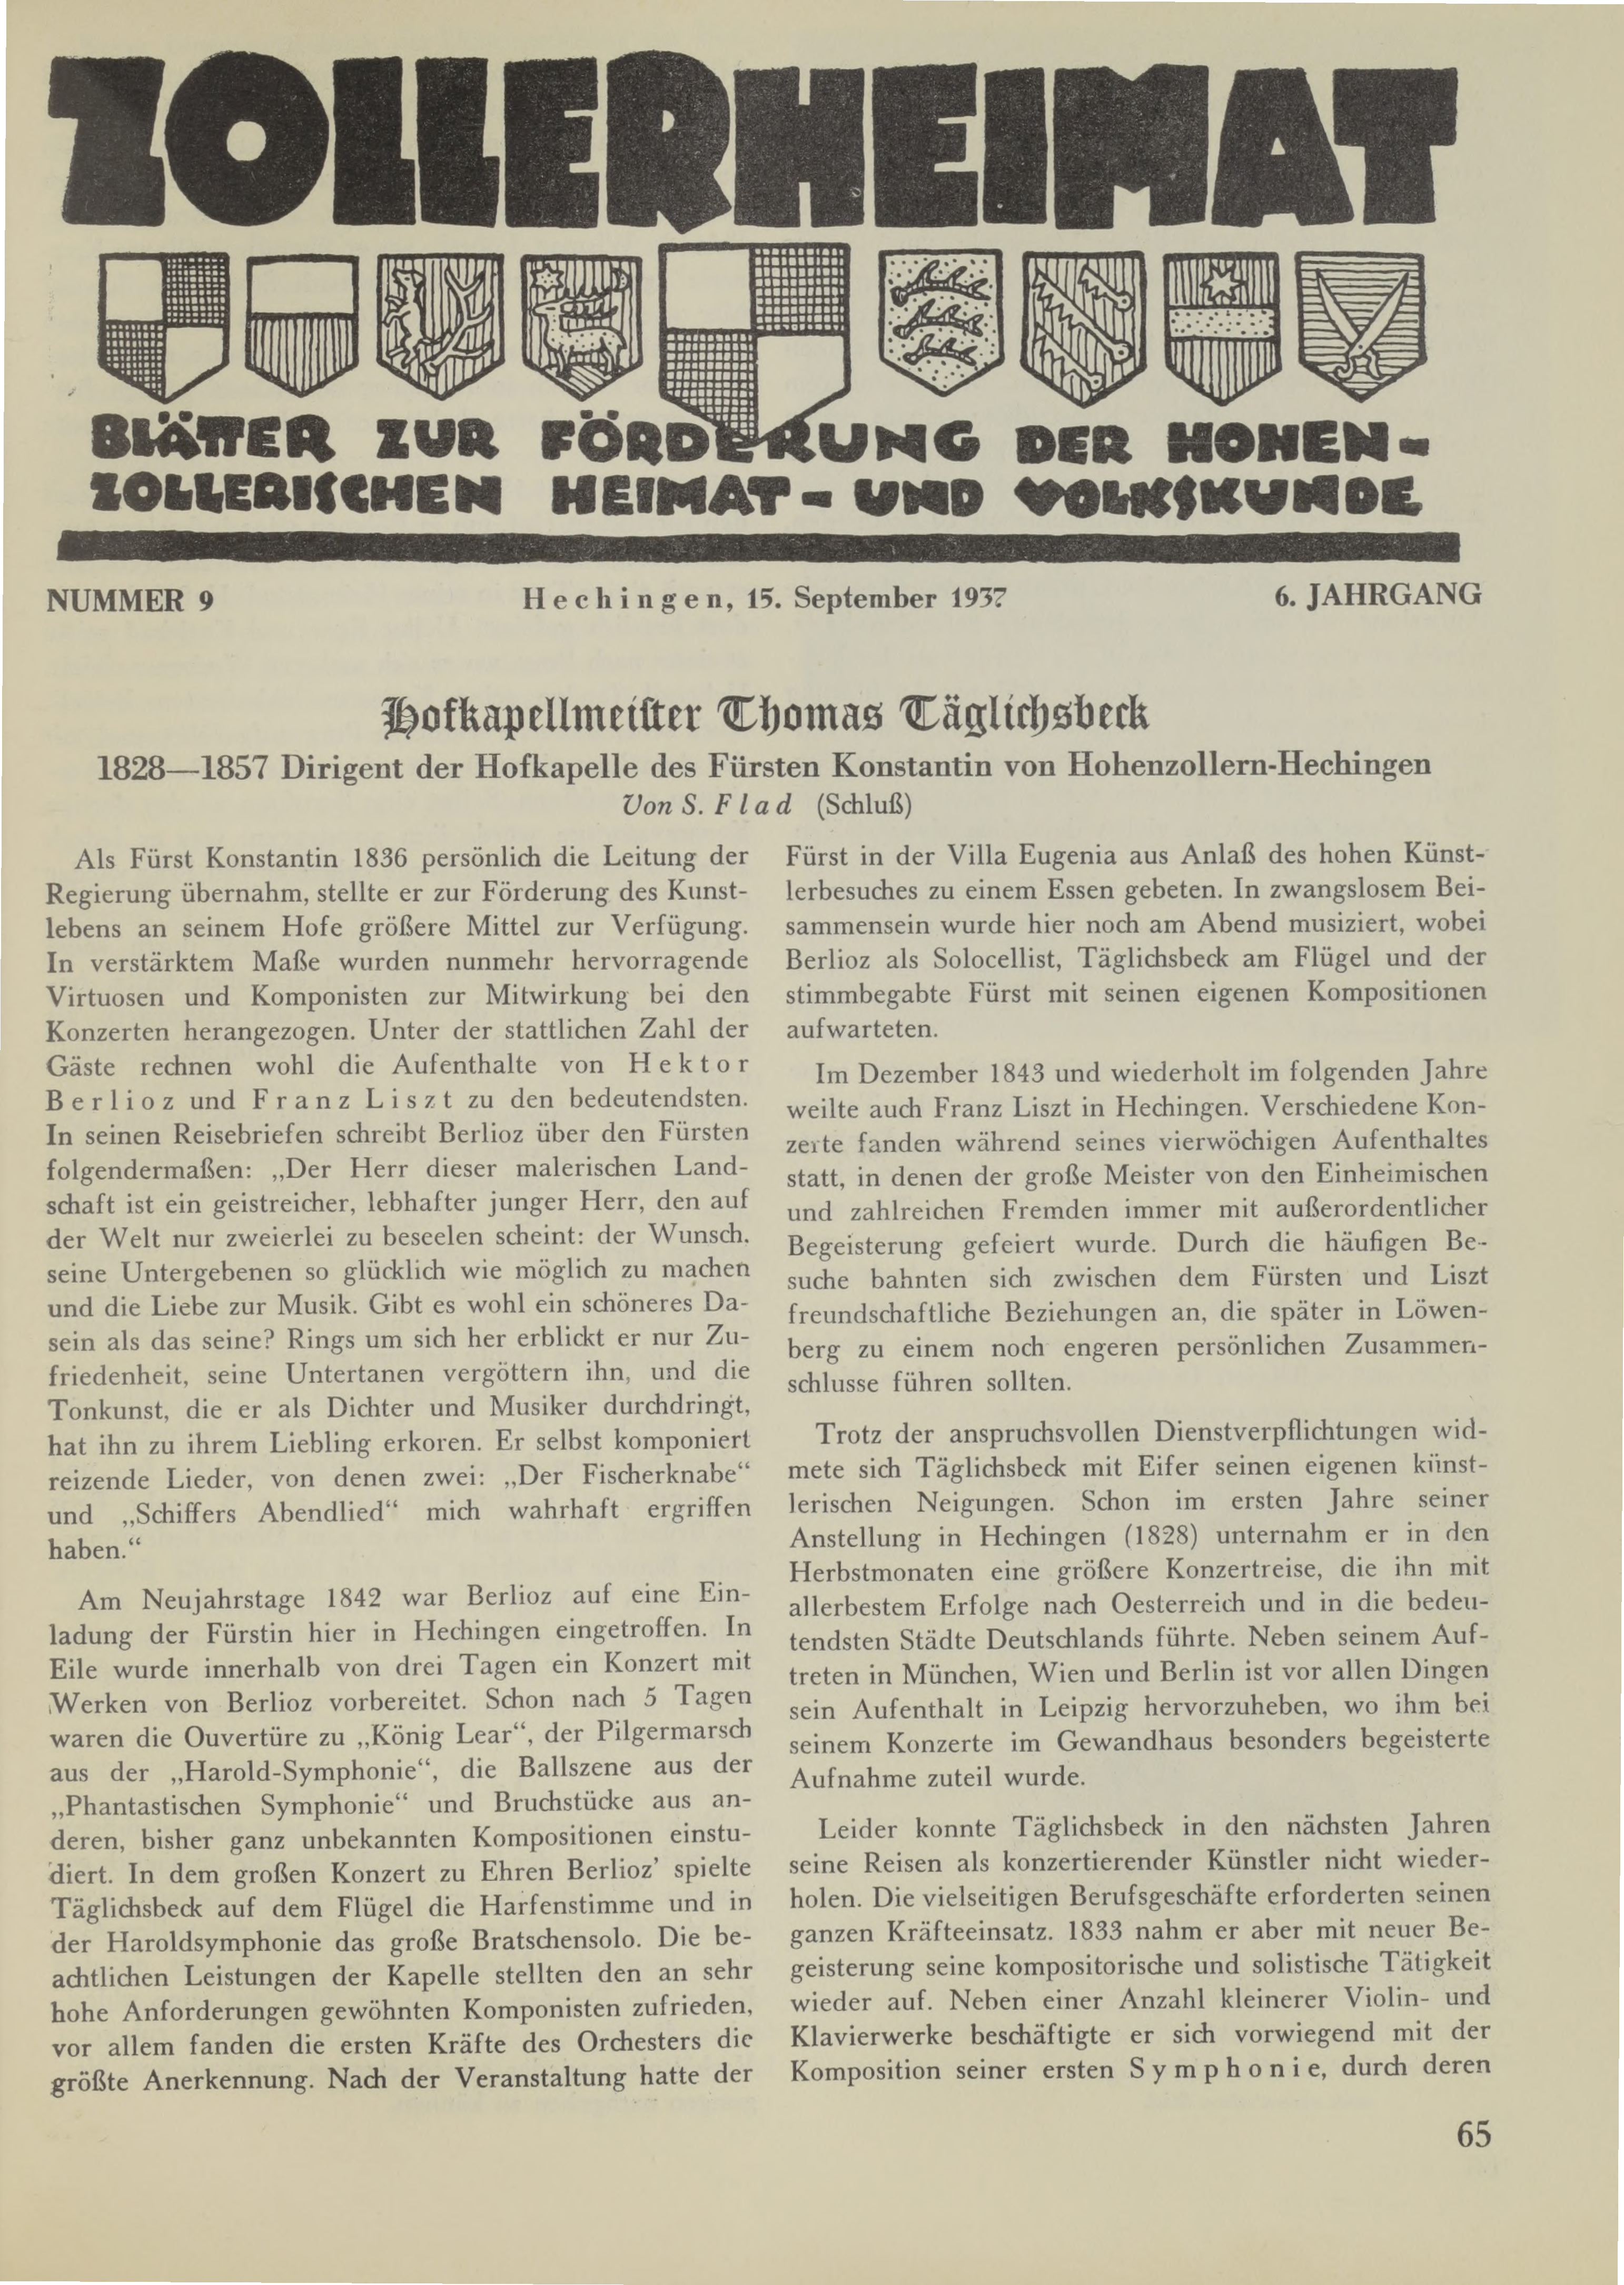                     Ansehen Bd. 6 Nr. 9 (1937): Zollerheimat
                